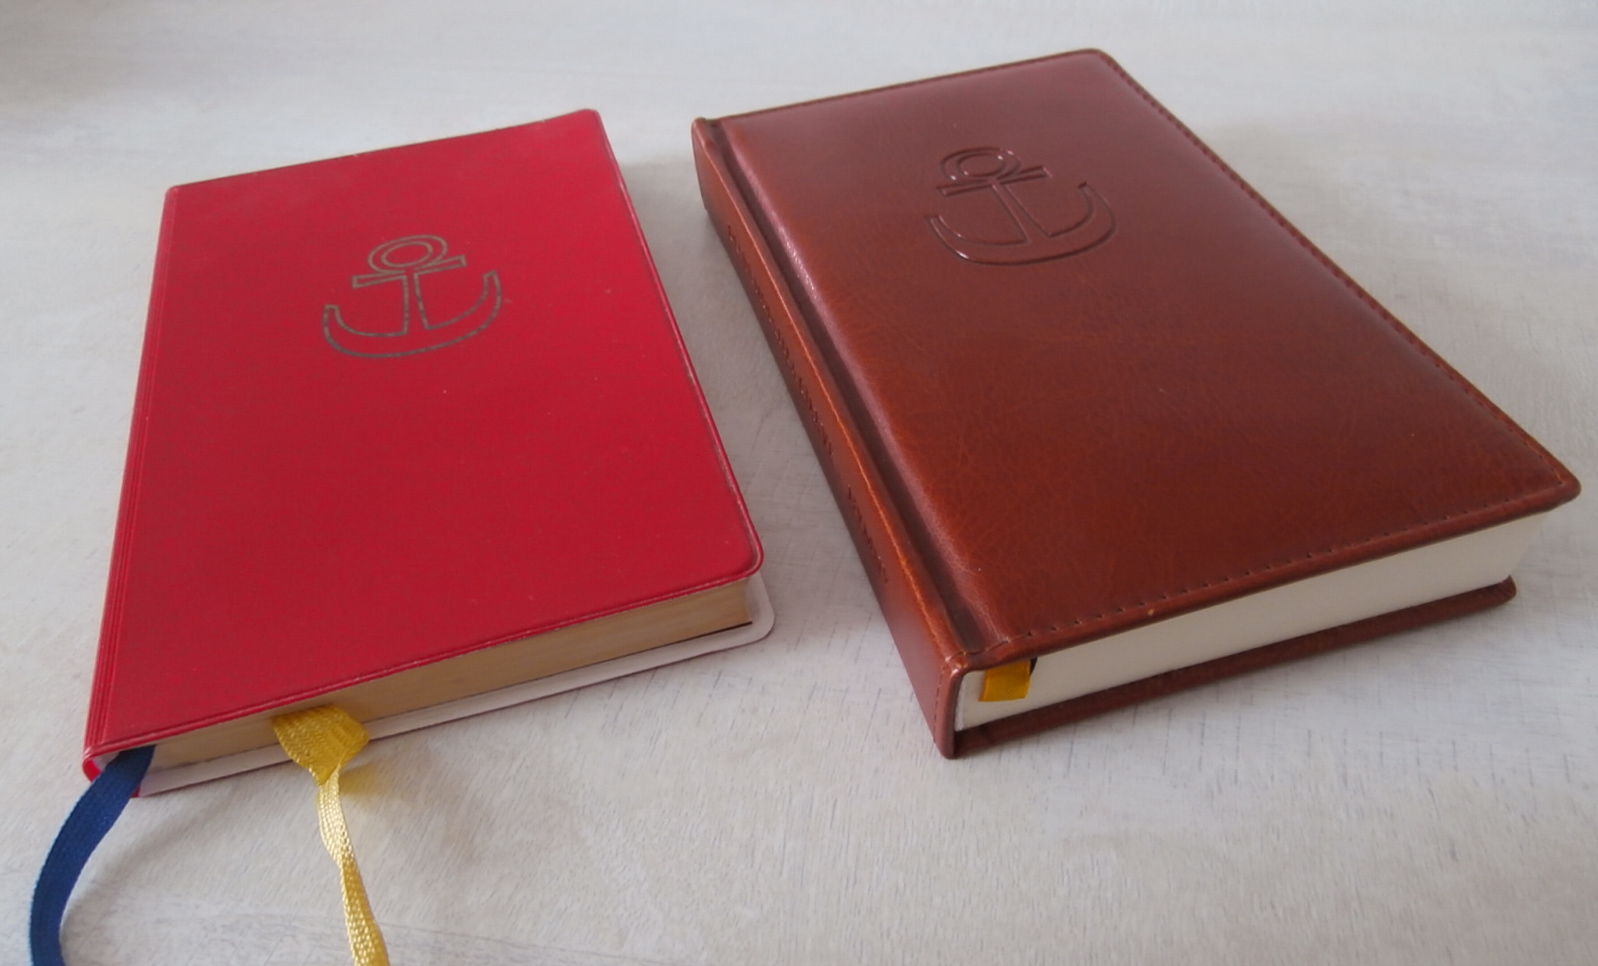 Denní modlitba církve - Hymny: první vydání (1989) a dotisk (2008)